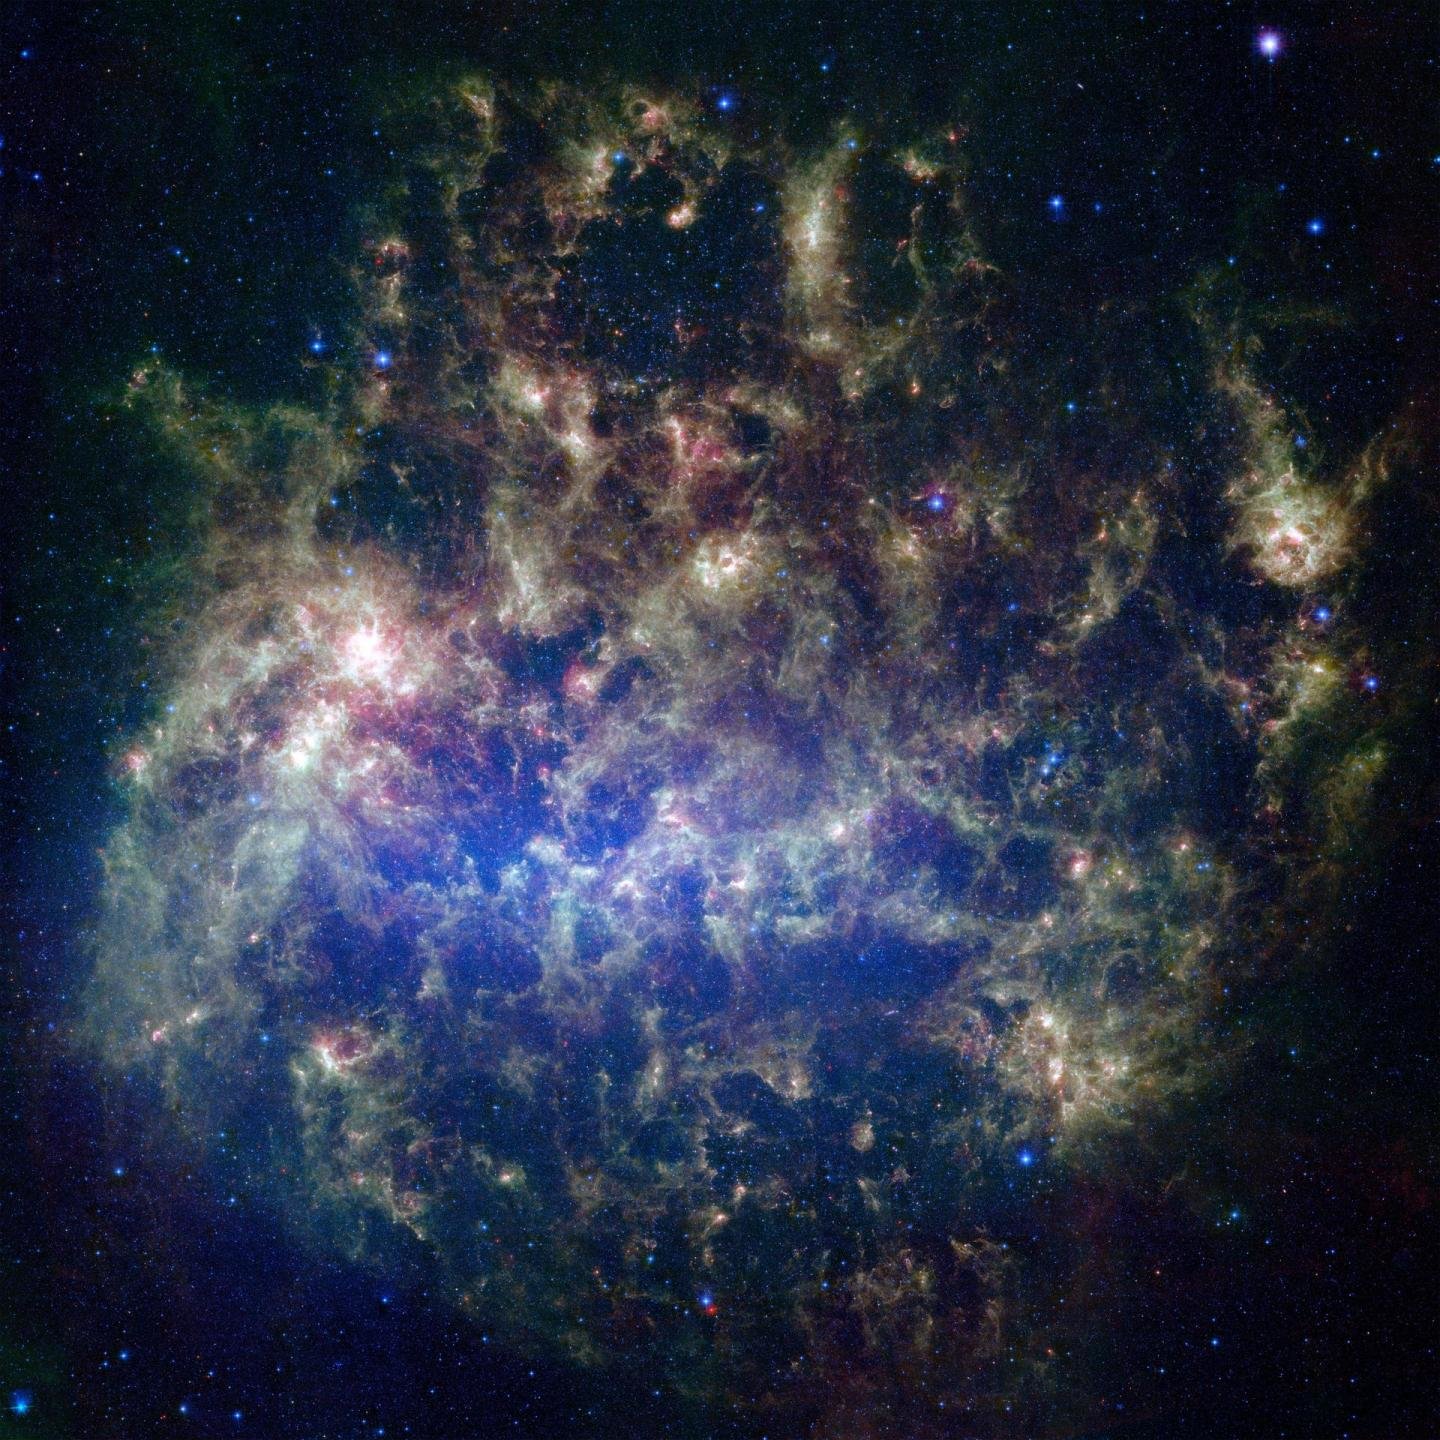 Velké Magellanovo mračno optikou Spitzerova vesmírného teleskopu. Kredit: NASA/JPL-Caltech/STScI.